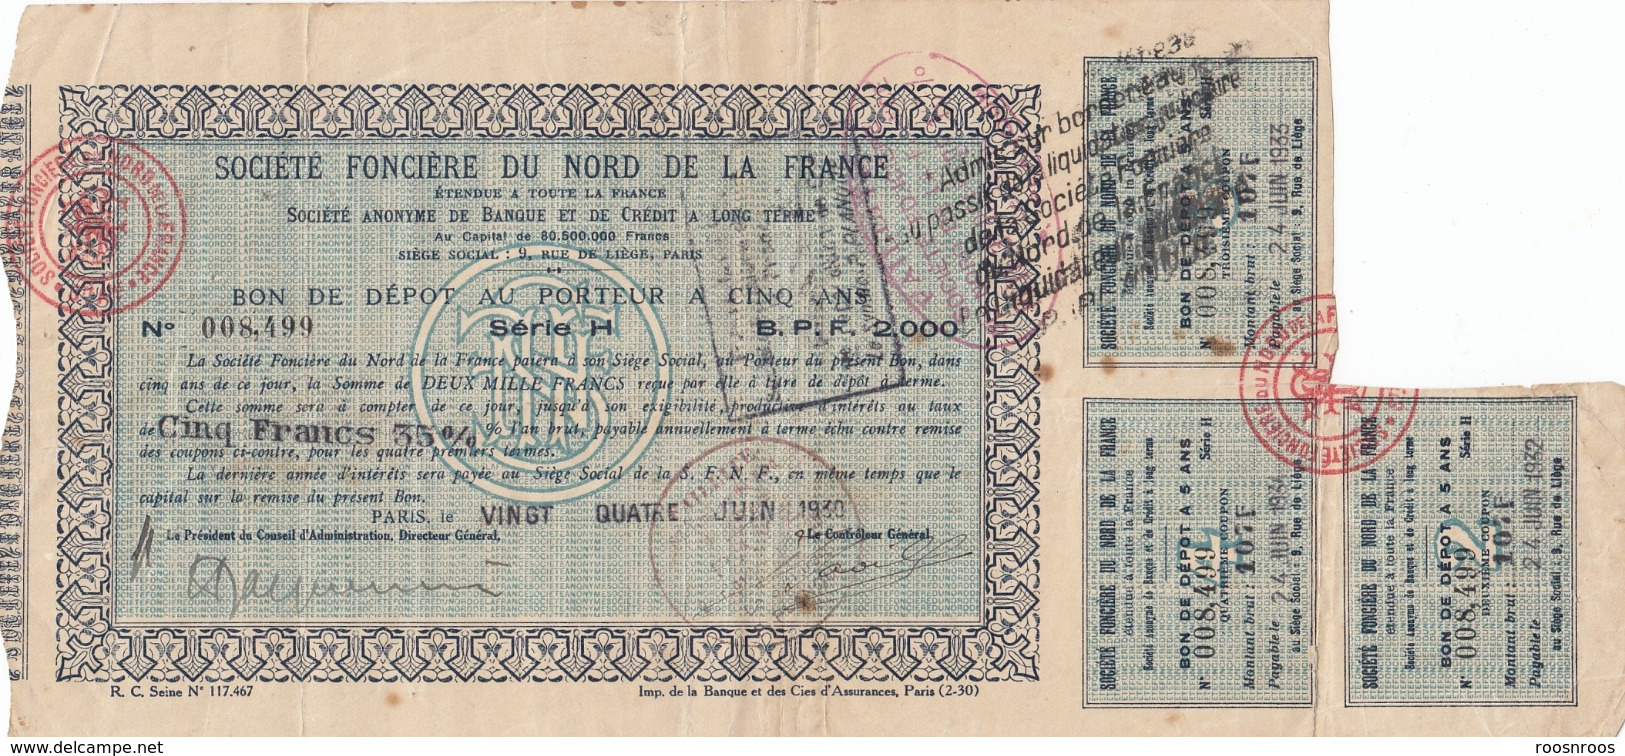 LOT 2 BONS DE DEPOT AU PORTEUR - SOCIETE FONCIERE DU NORD DE LA FRANCE -1930 - S - V